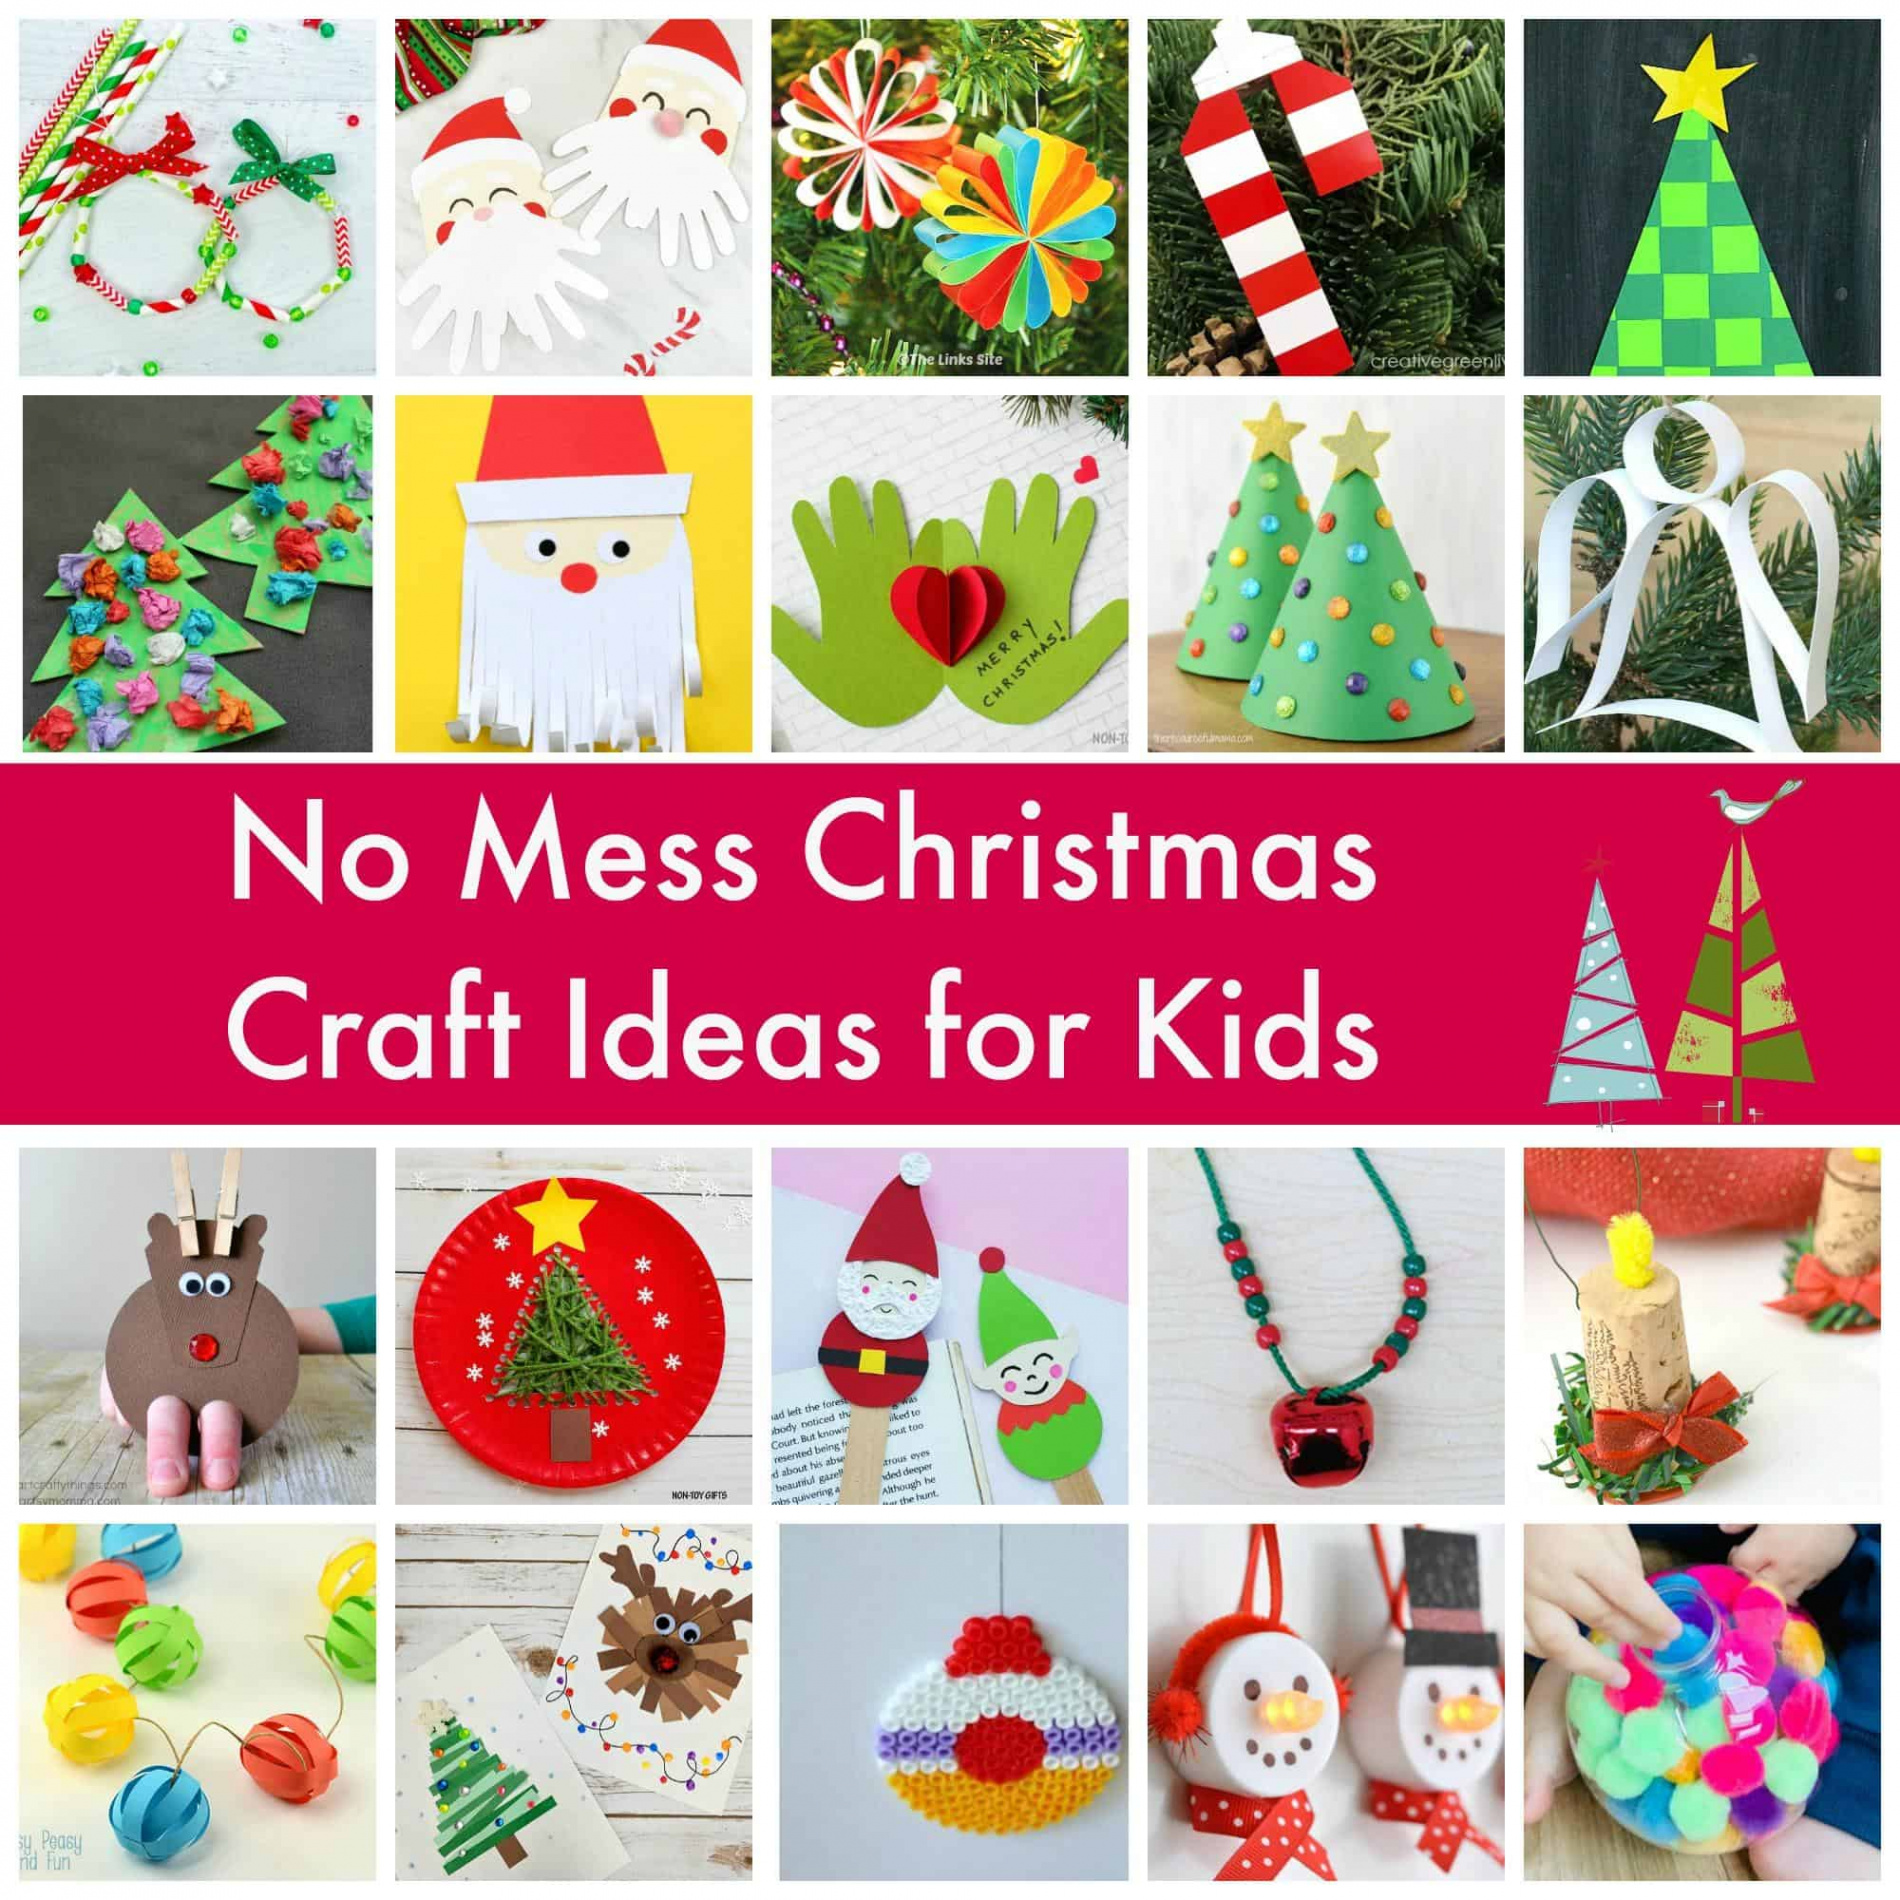 No Mess Christmas Craft Ideas for Kids - Emma Owl